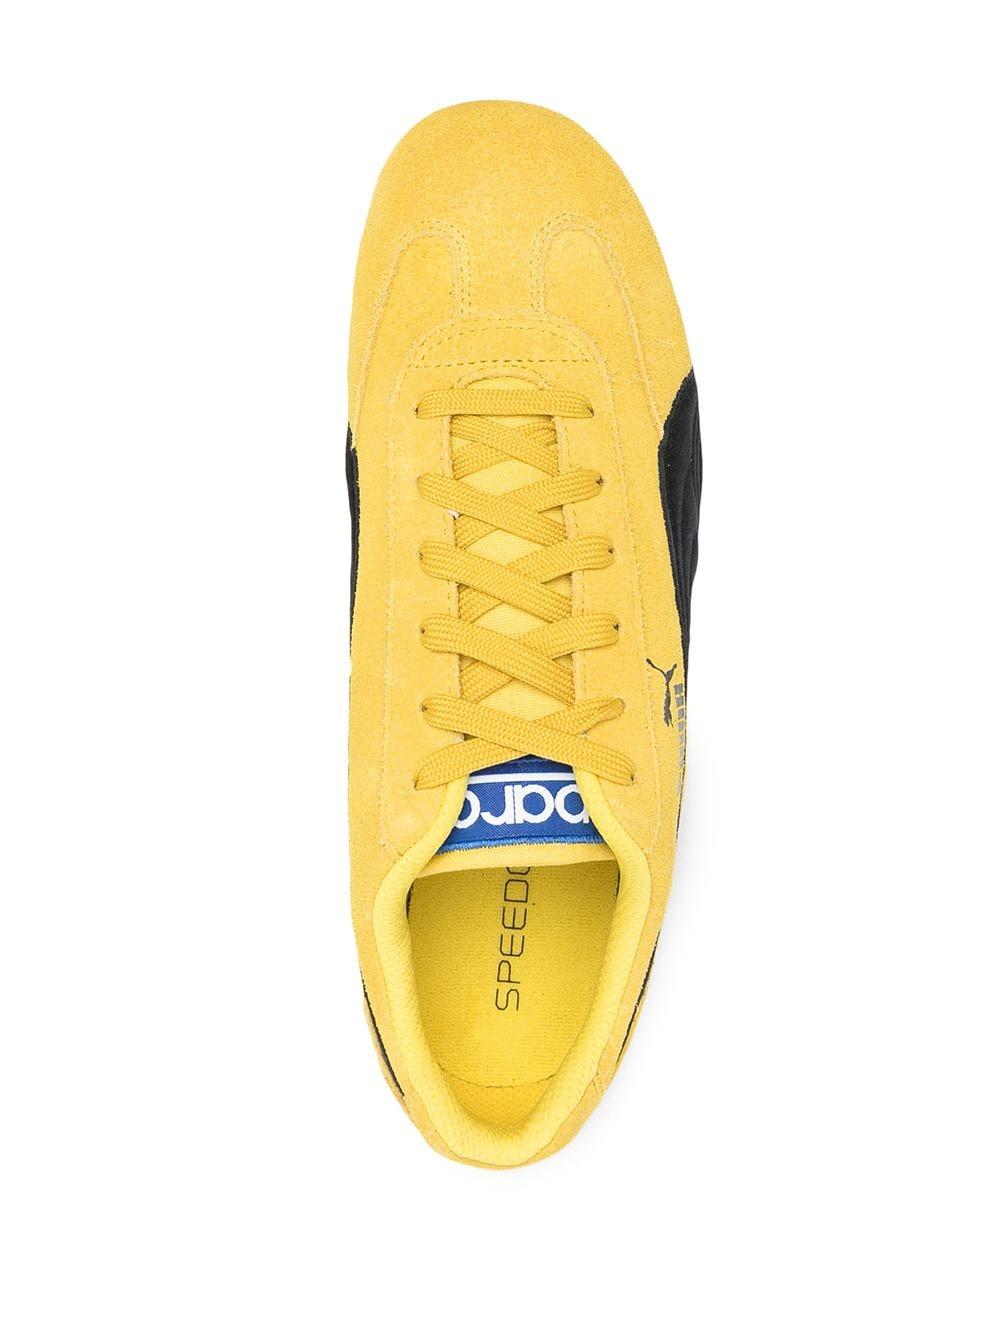 PUMA Speedcat Low-top Sneakers in Yellow for Men | Lyst